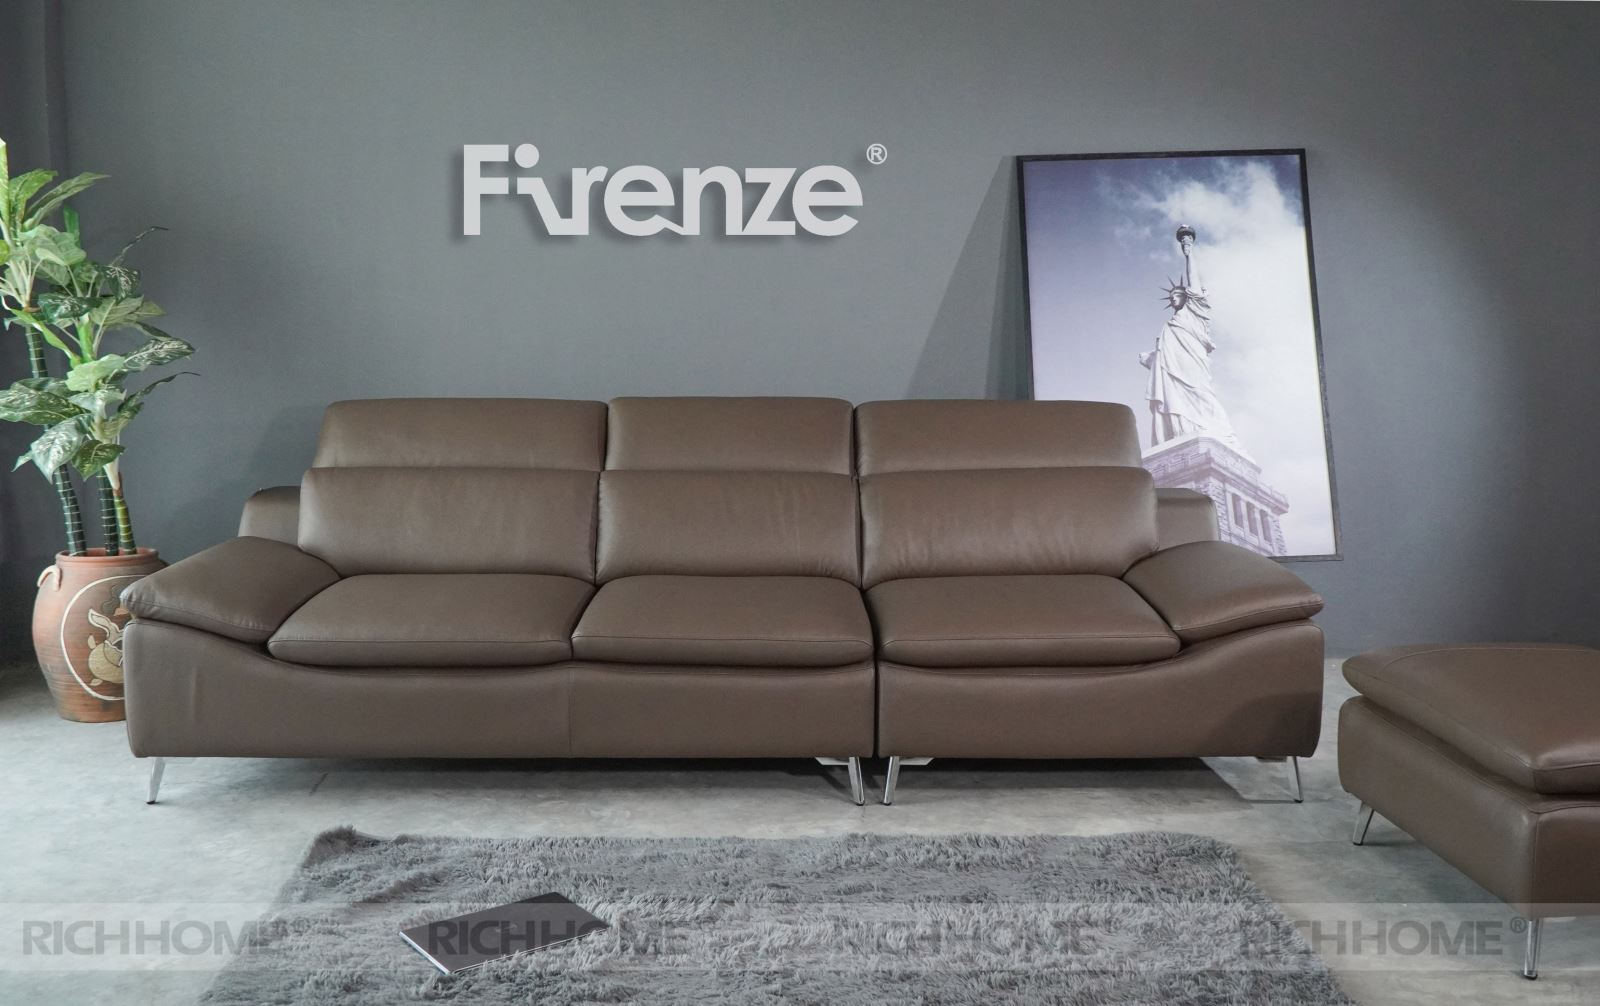 Cách chọn mẫu ghế sofa đẹp nhất cho phòng khách 15m2 - Ảnh 2